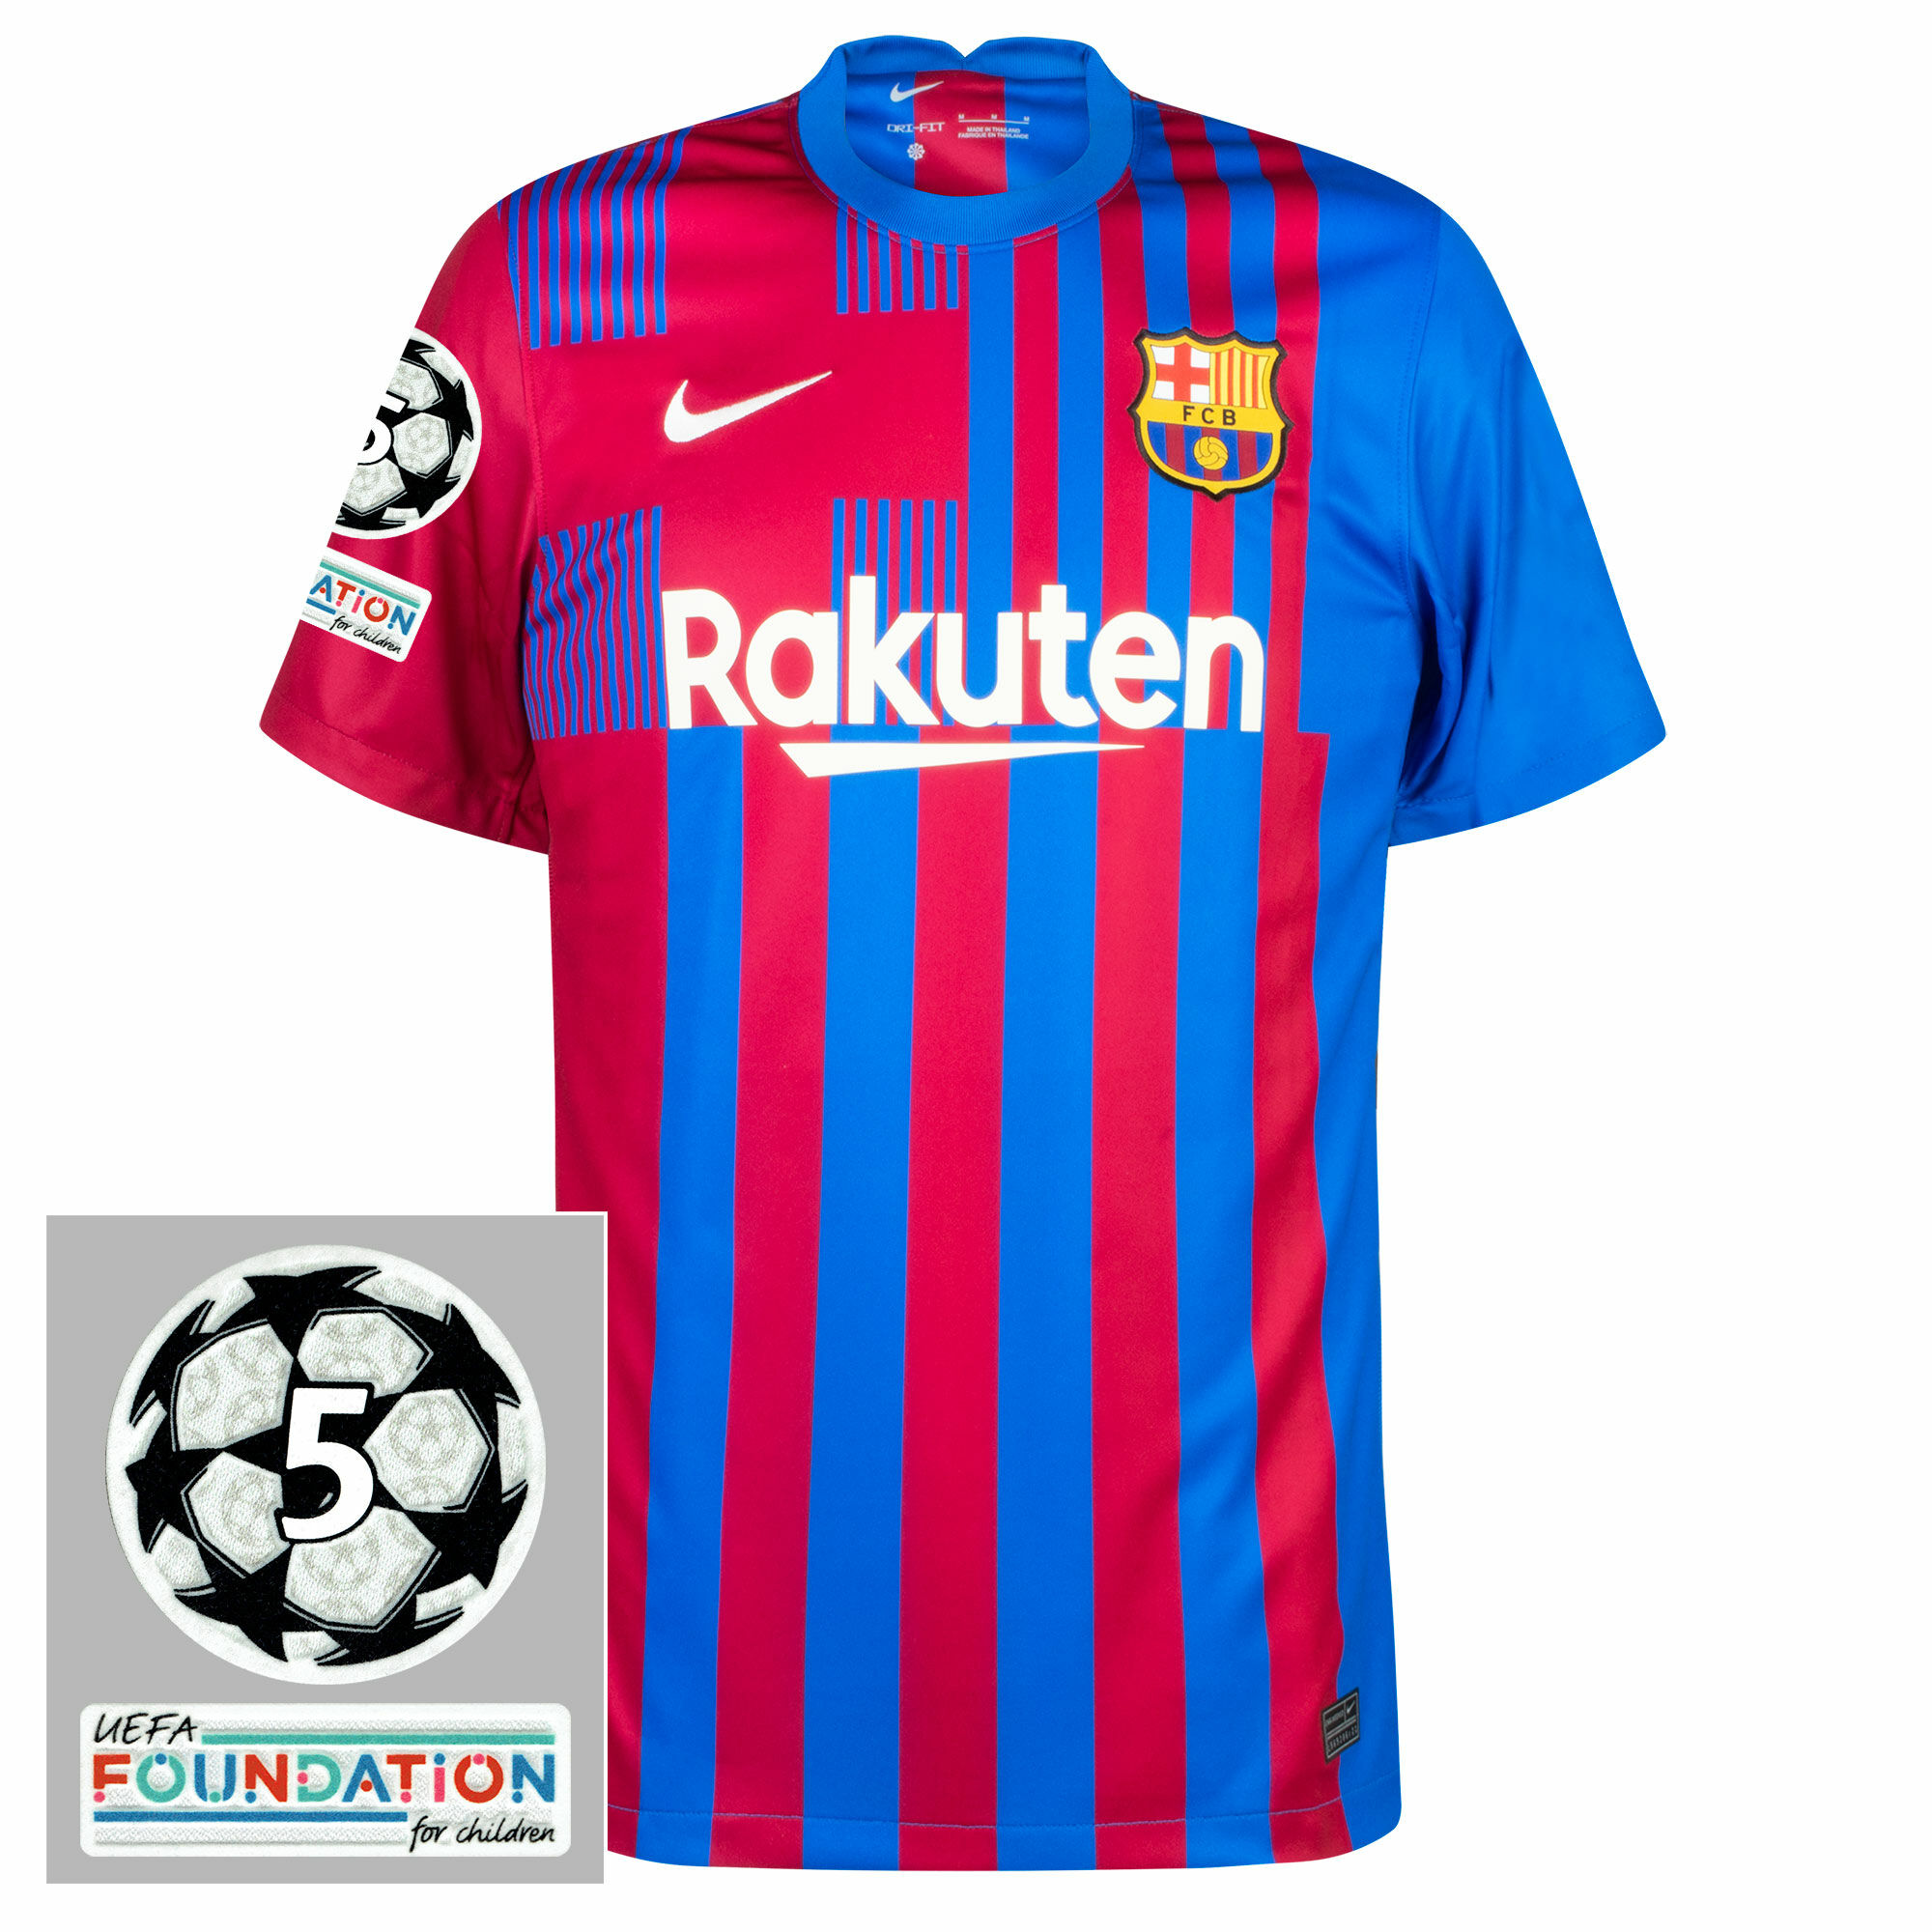 Barcelona - Dres fotbalový - sezóna 2021/22, loga UCL 5 a UEFA Foundation, modročervený, domácí